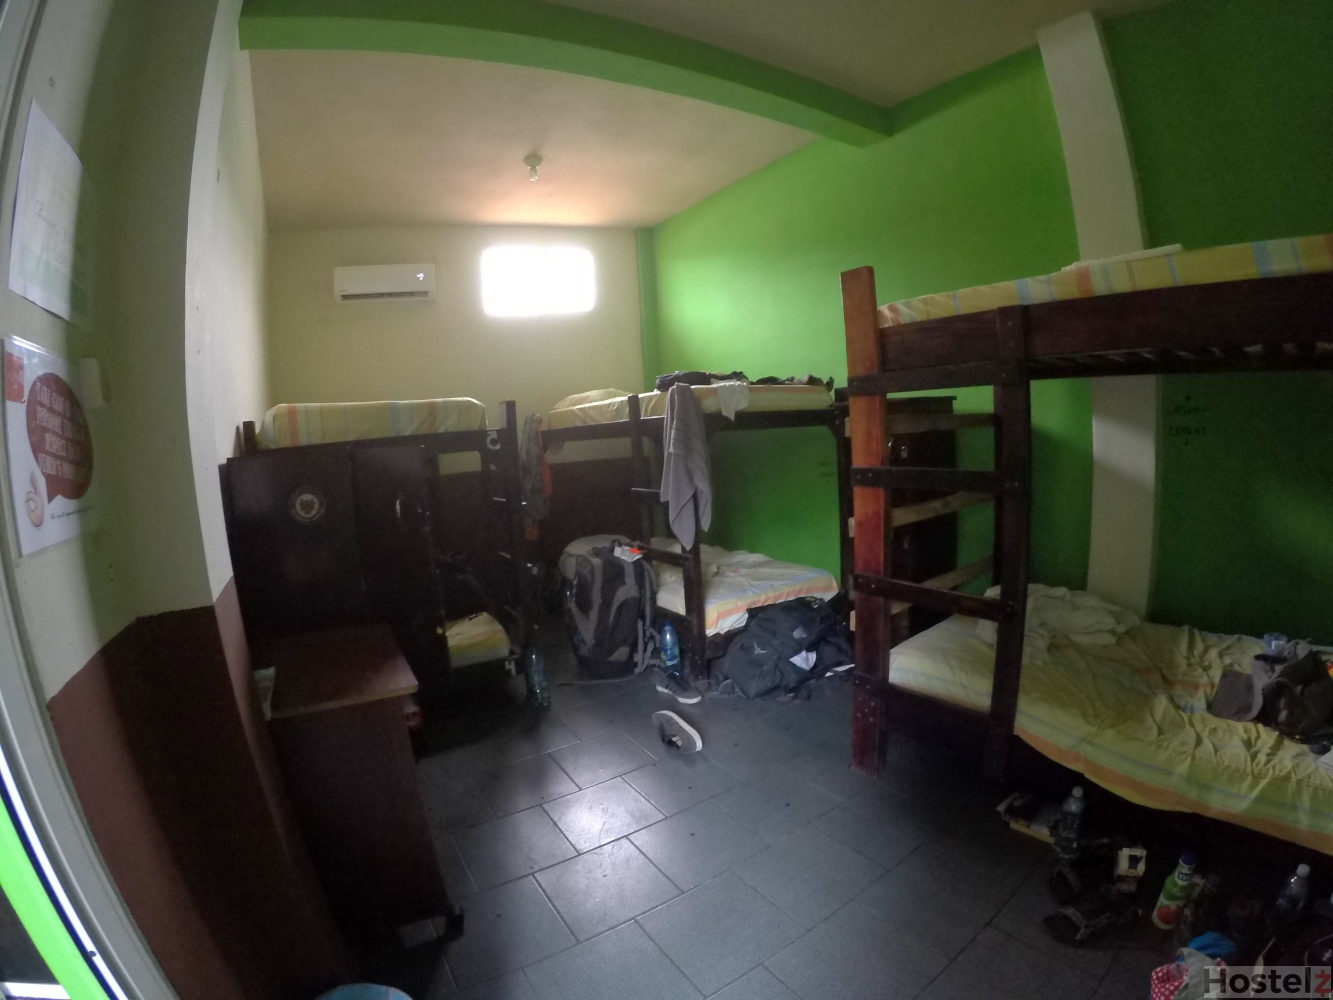 6-bed dorm room.